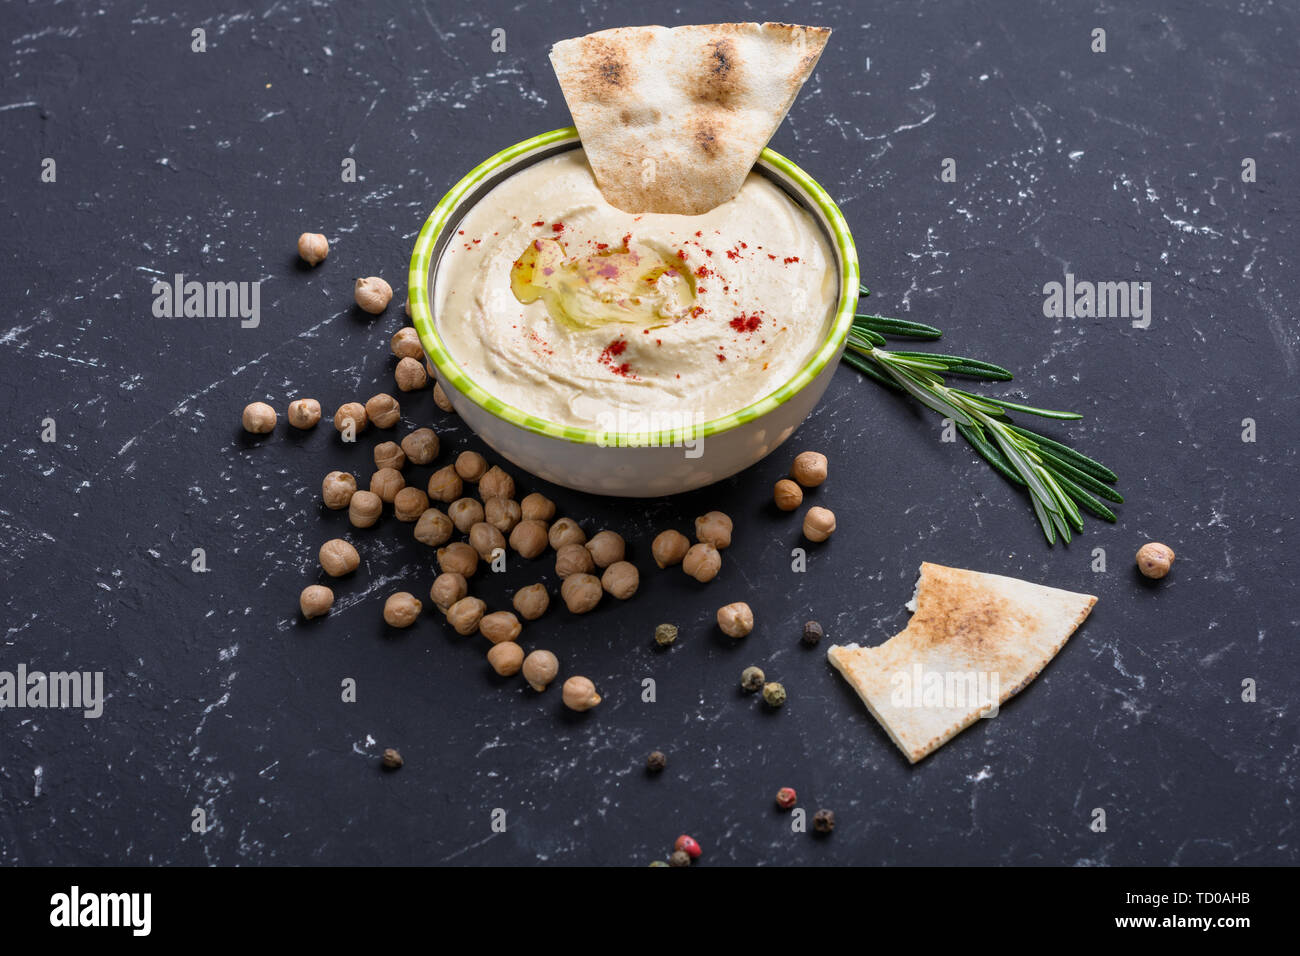 Hummus casero, garbanzos, frijoles, Rosemary con pita en black mesa de piedra. La cocina árabe tradicional de Oriente Medio. Foto de stock